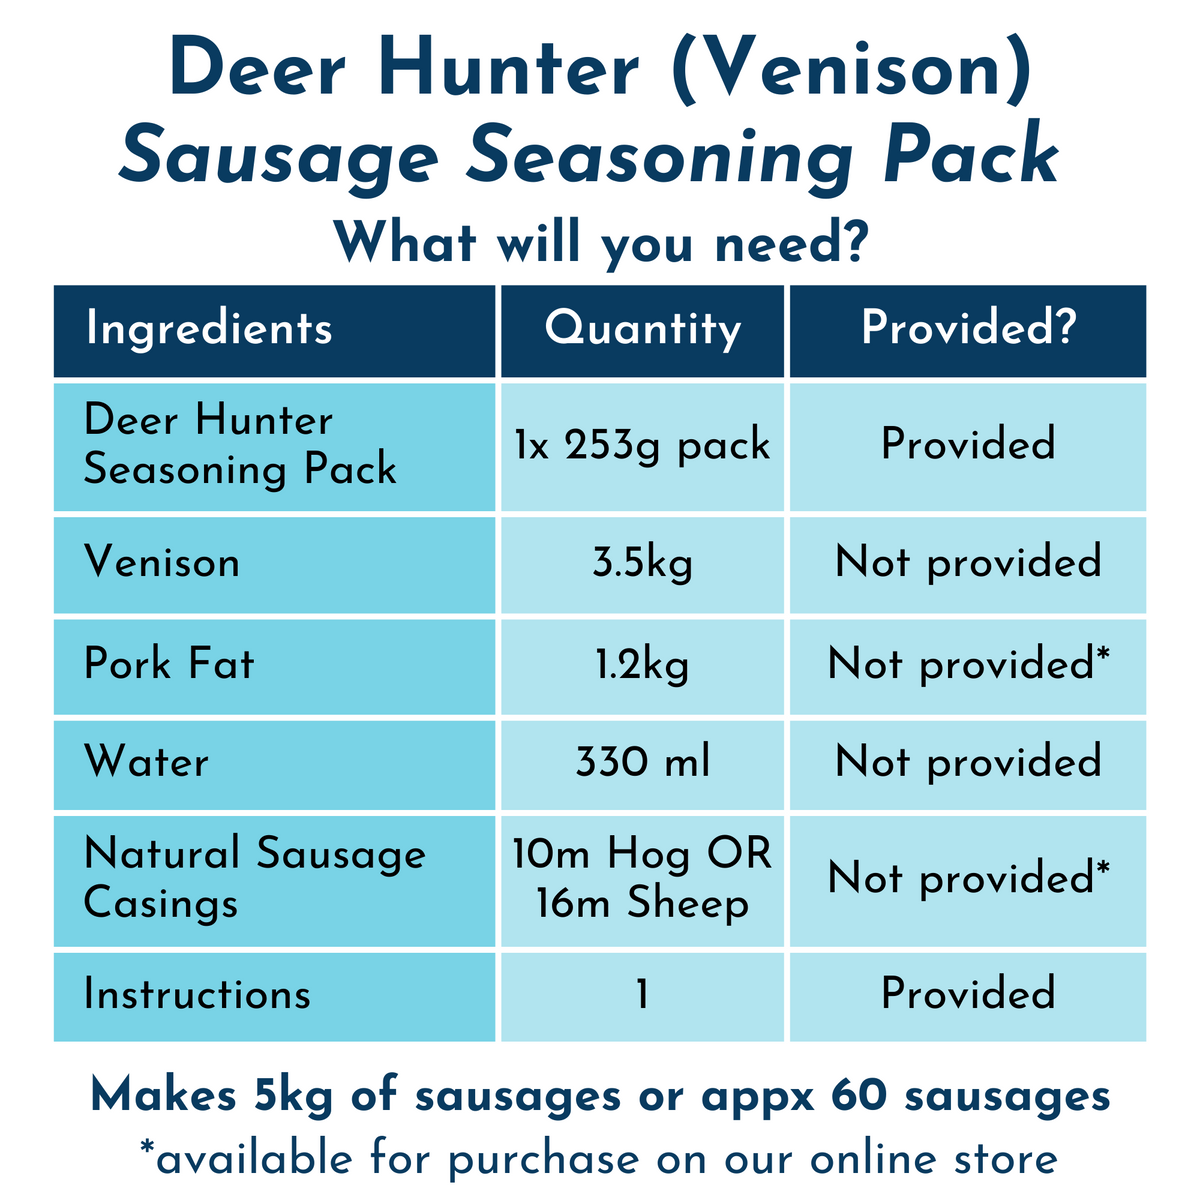 Sausage Seasoning Pack: Deer Hunter (Venison) Sausage 253g x 6 Packs